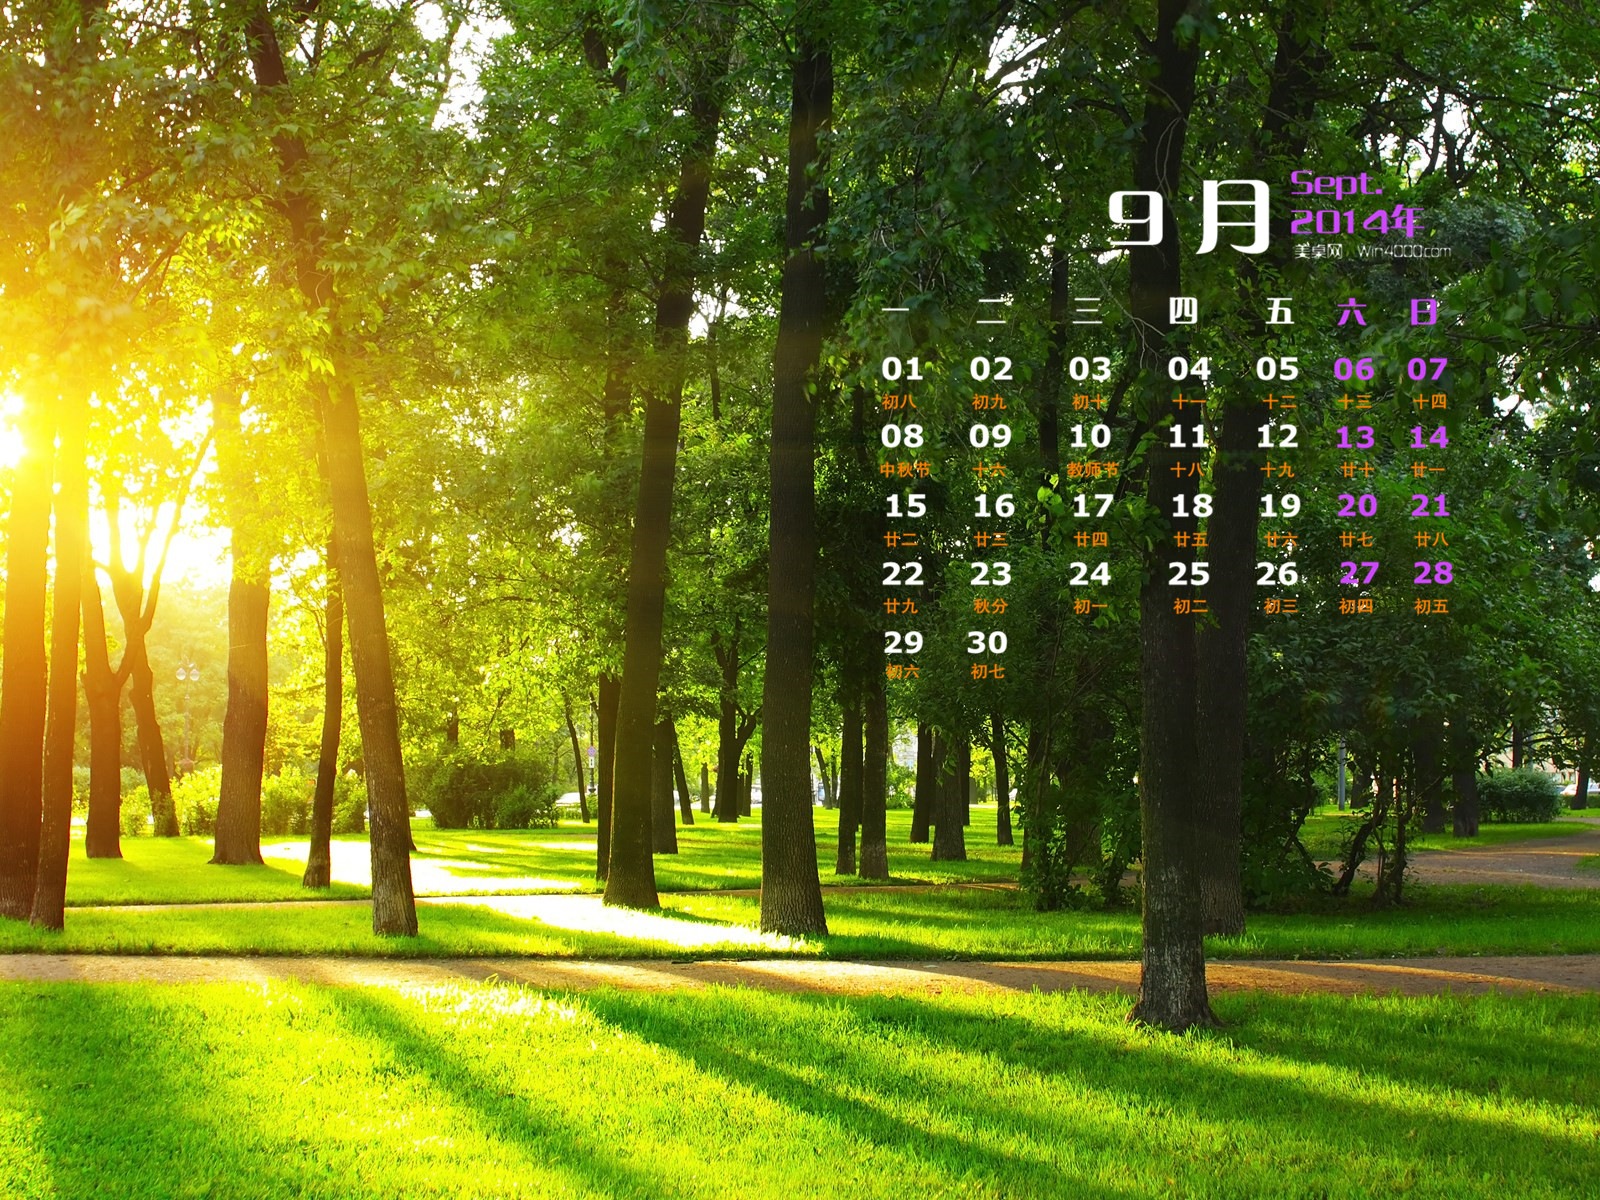 09 2014 wallpaper Calendario (1) #19 - 1600x1200